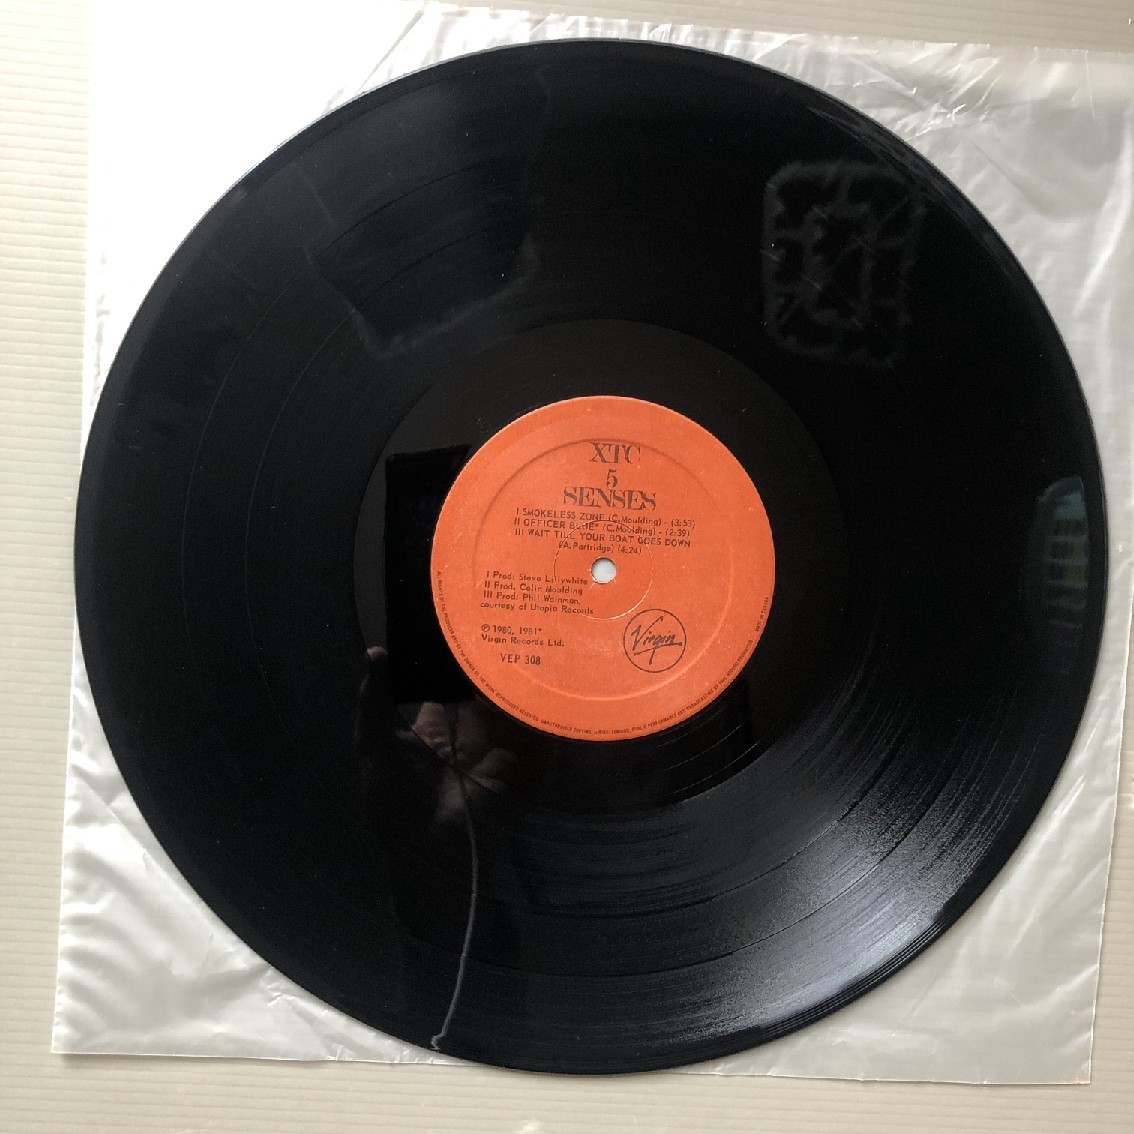 傷なし美盤 レア盤 XTC 1981年 LPレコード 5 Senses カナダ盤 Rock Andy Partridge_画像8